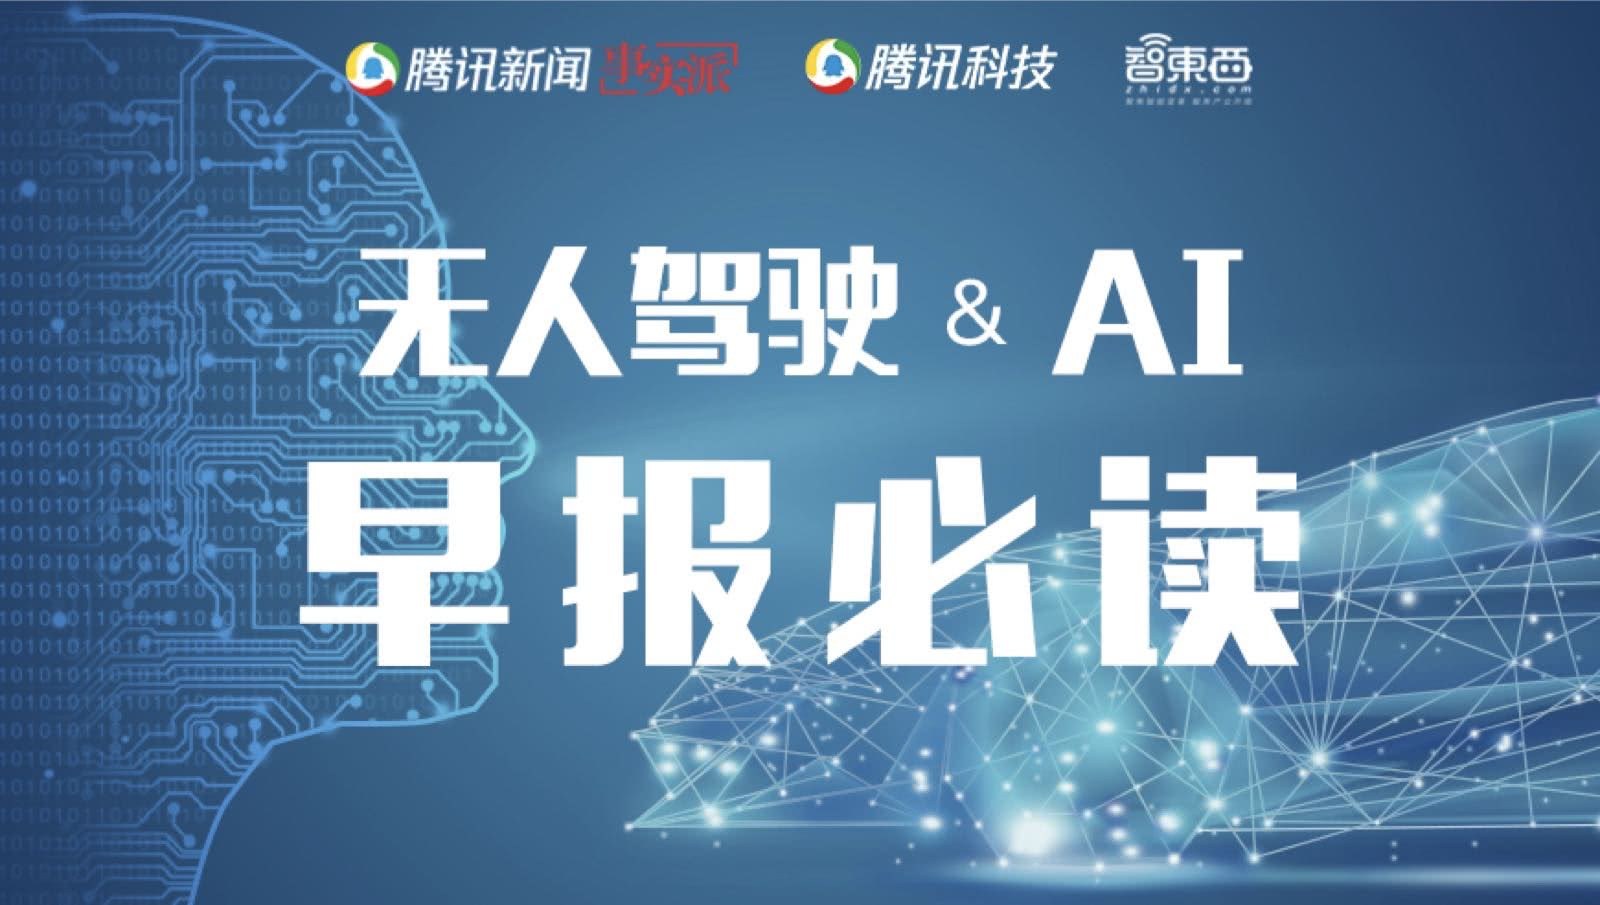 早报：谷歌禁止AI技术武器化中国铁路启动自动驾驶试验